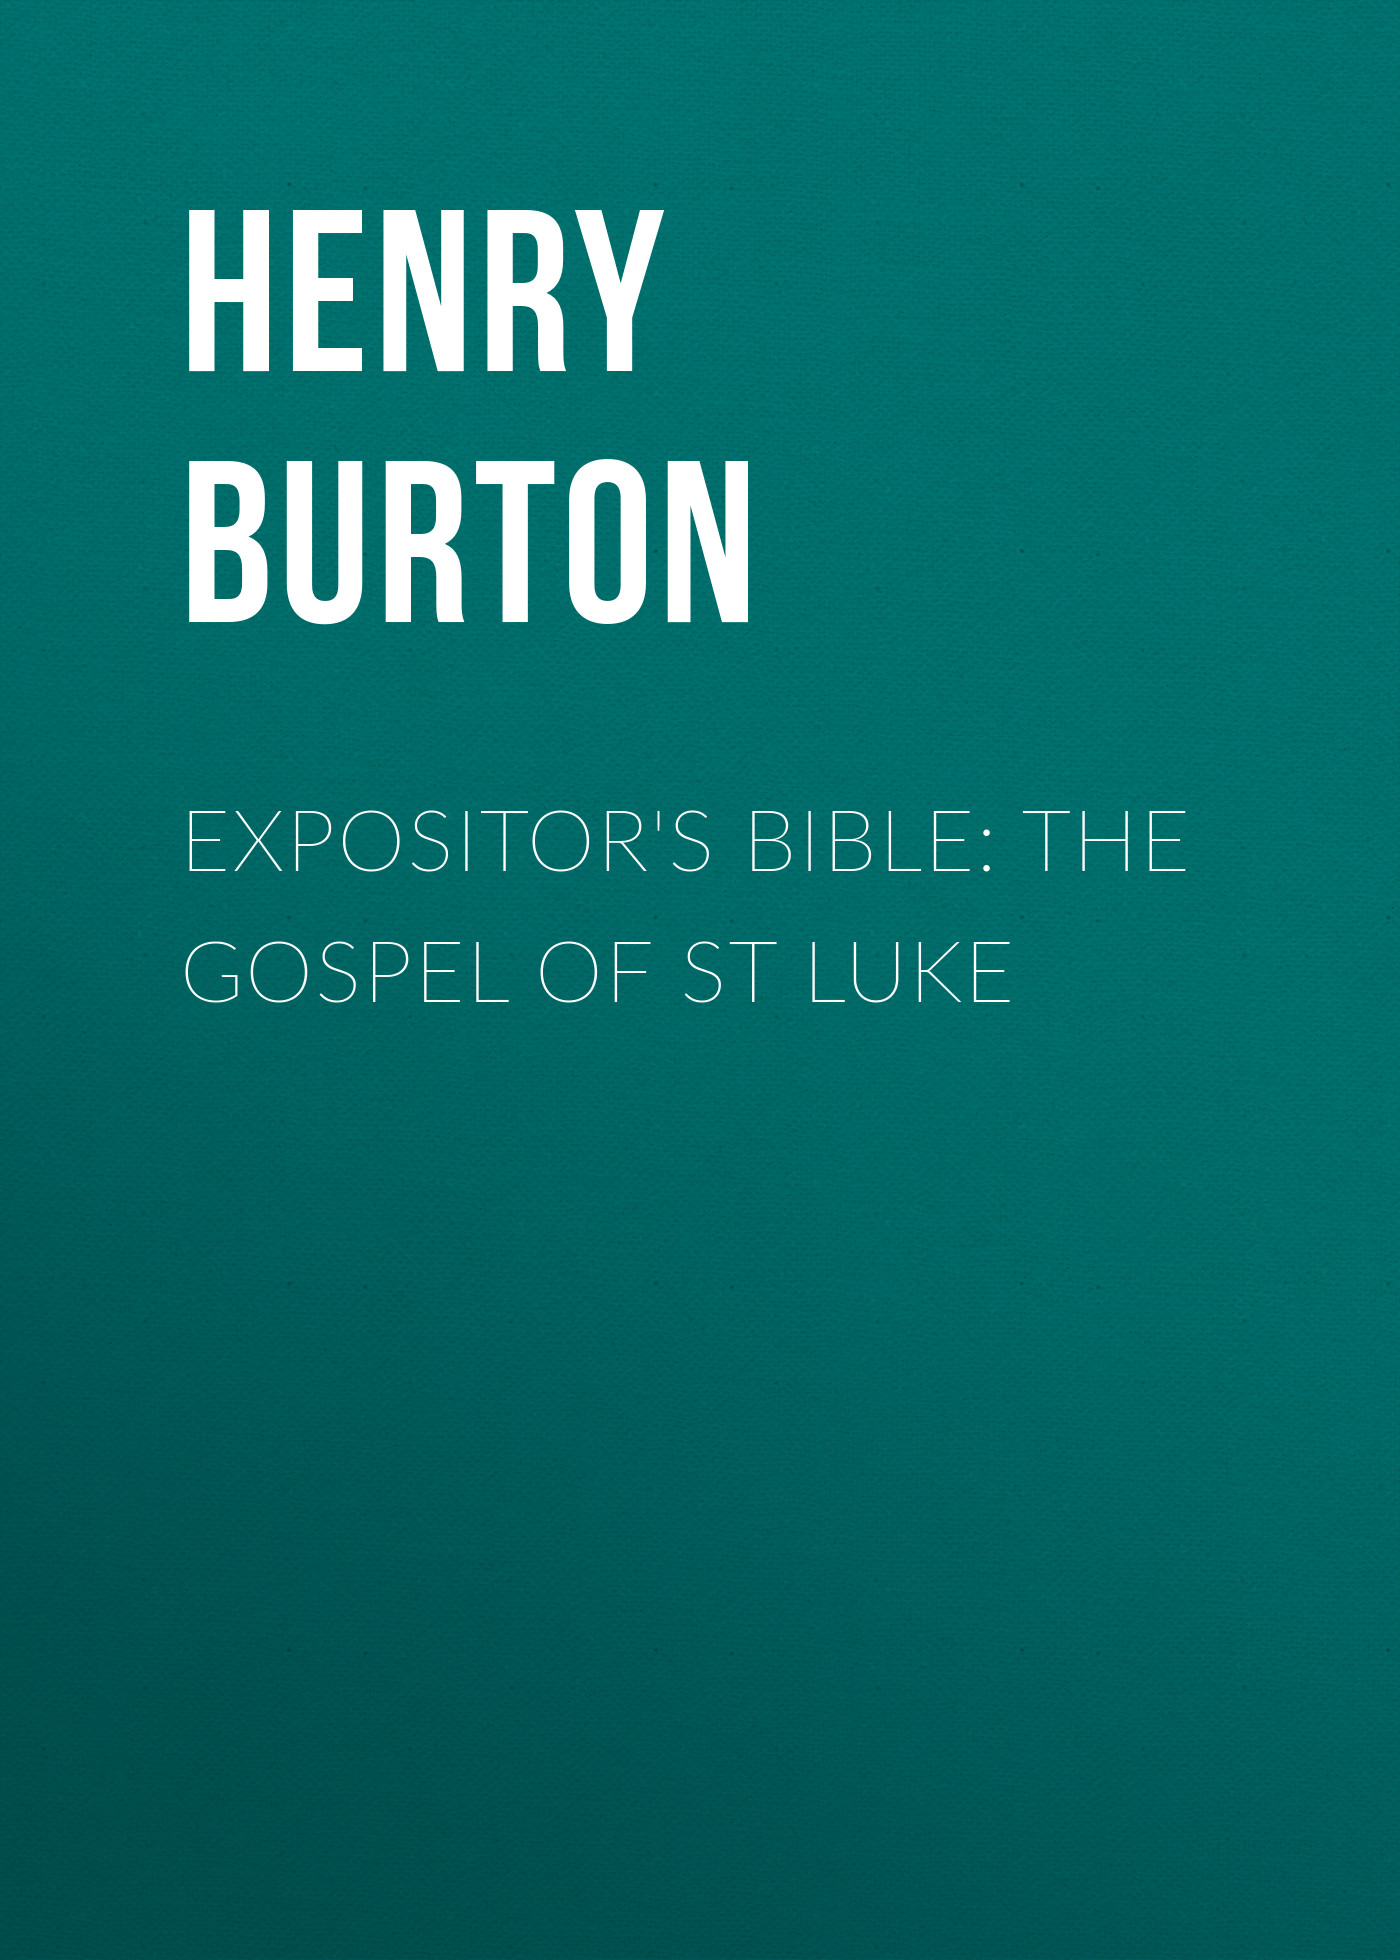 Expositor's Bible: The Gospel of St Luke